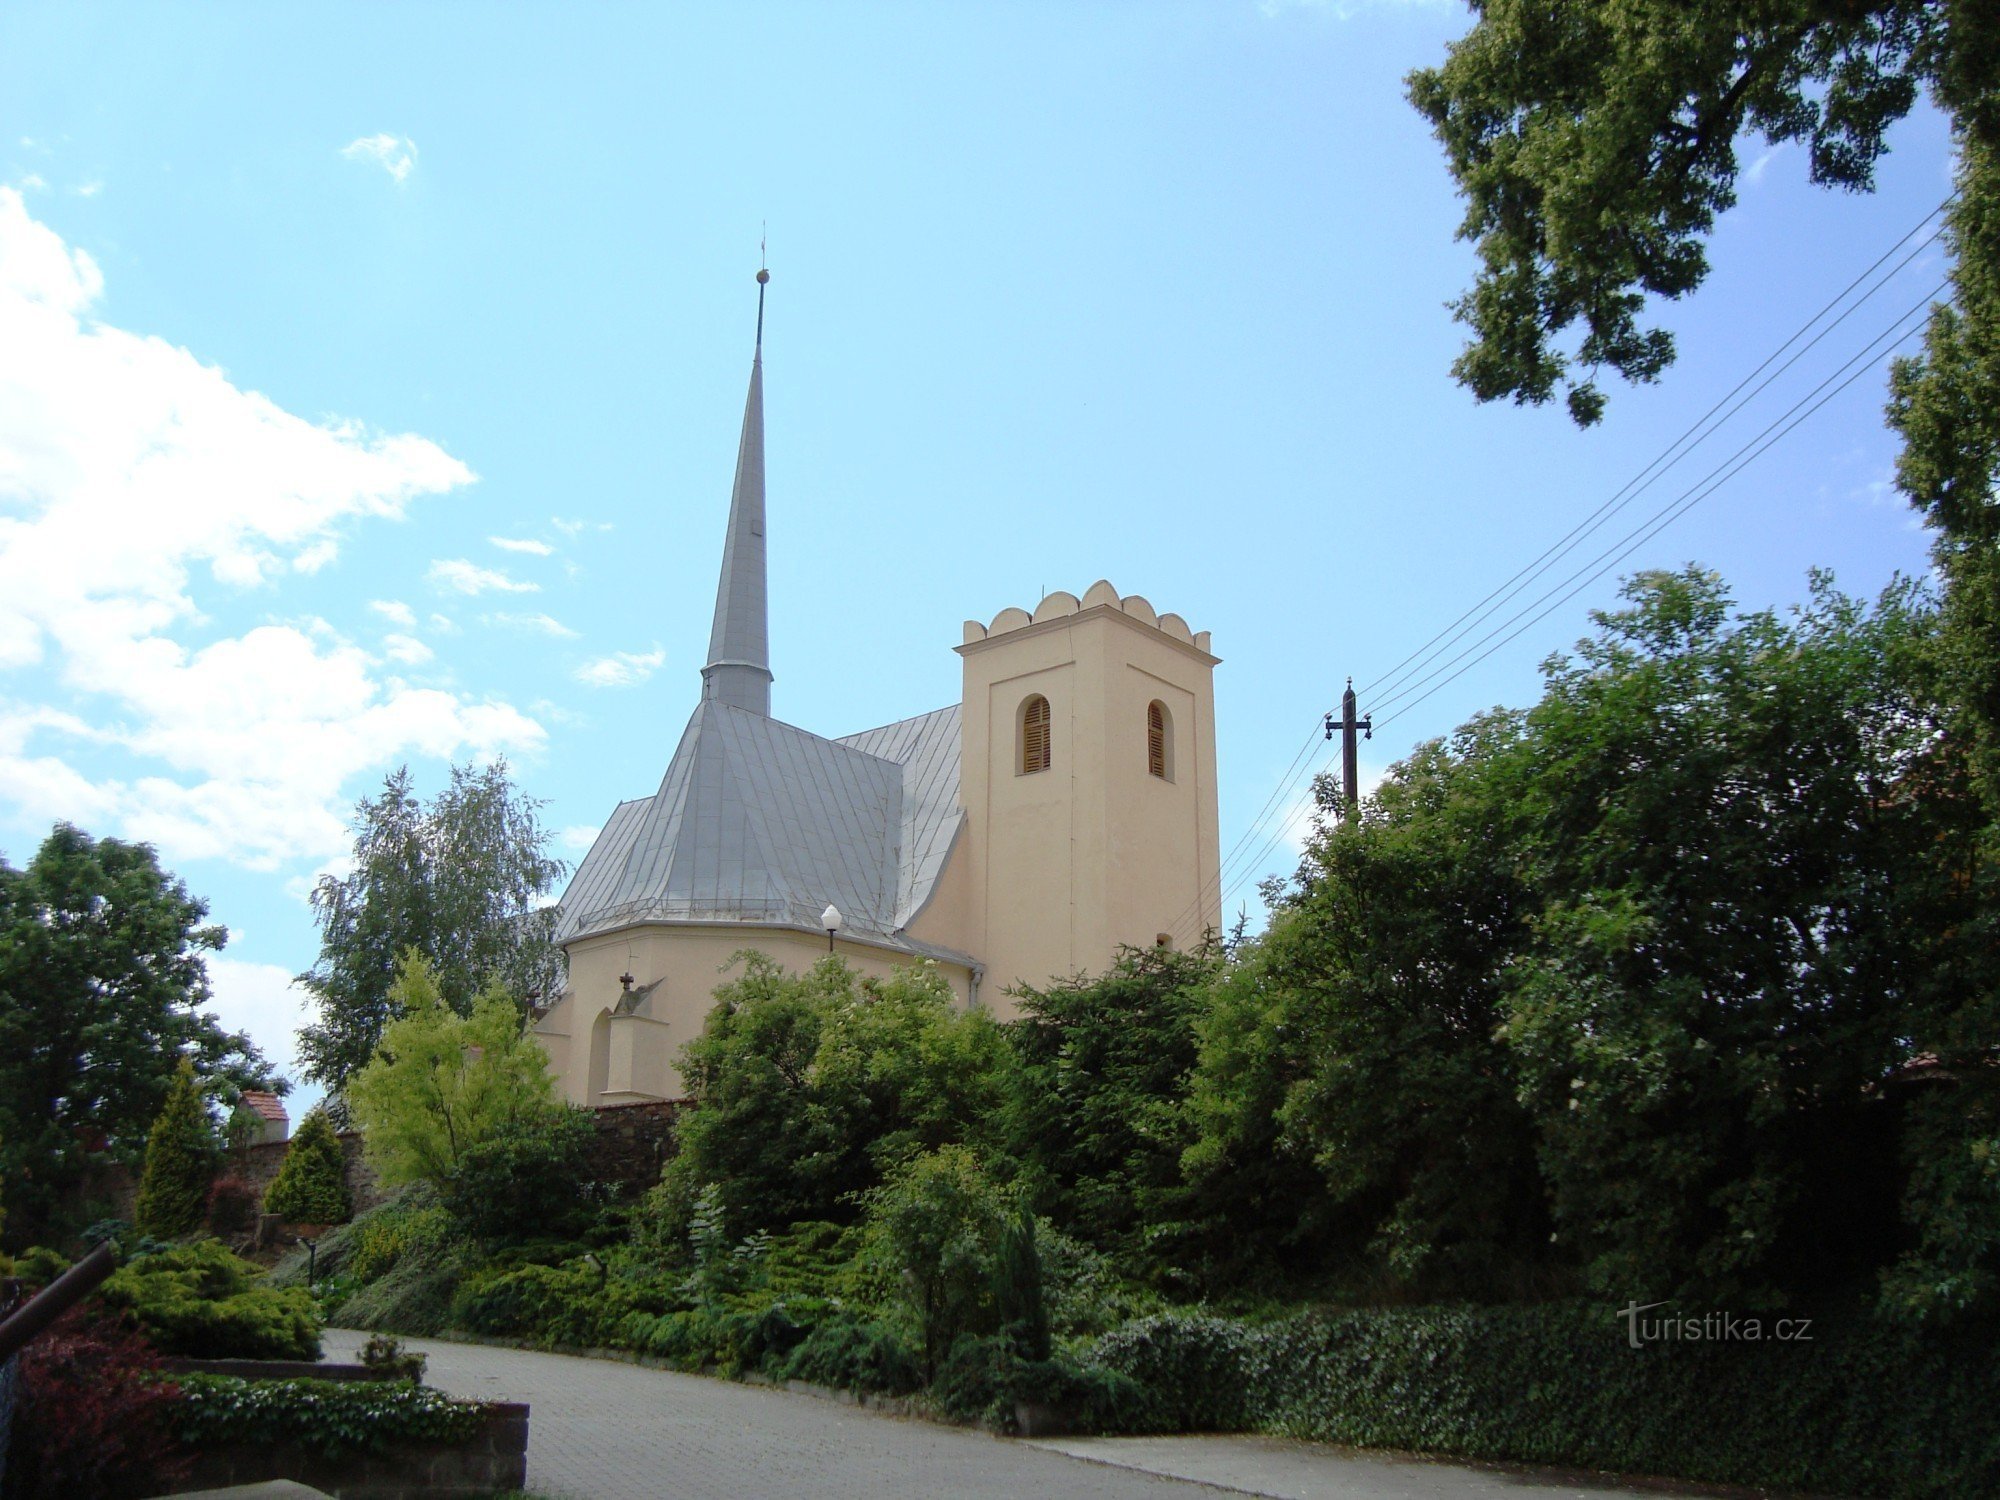 Slavonín - župnijska cerkev sv. Andreja - Foto: Ulrych Mir.